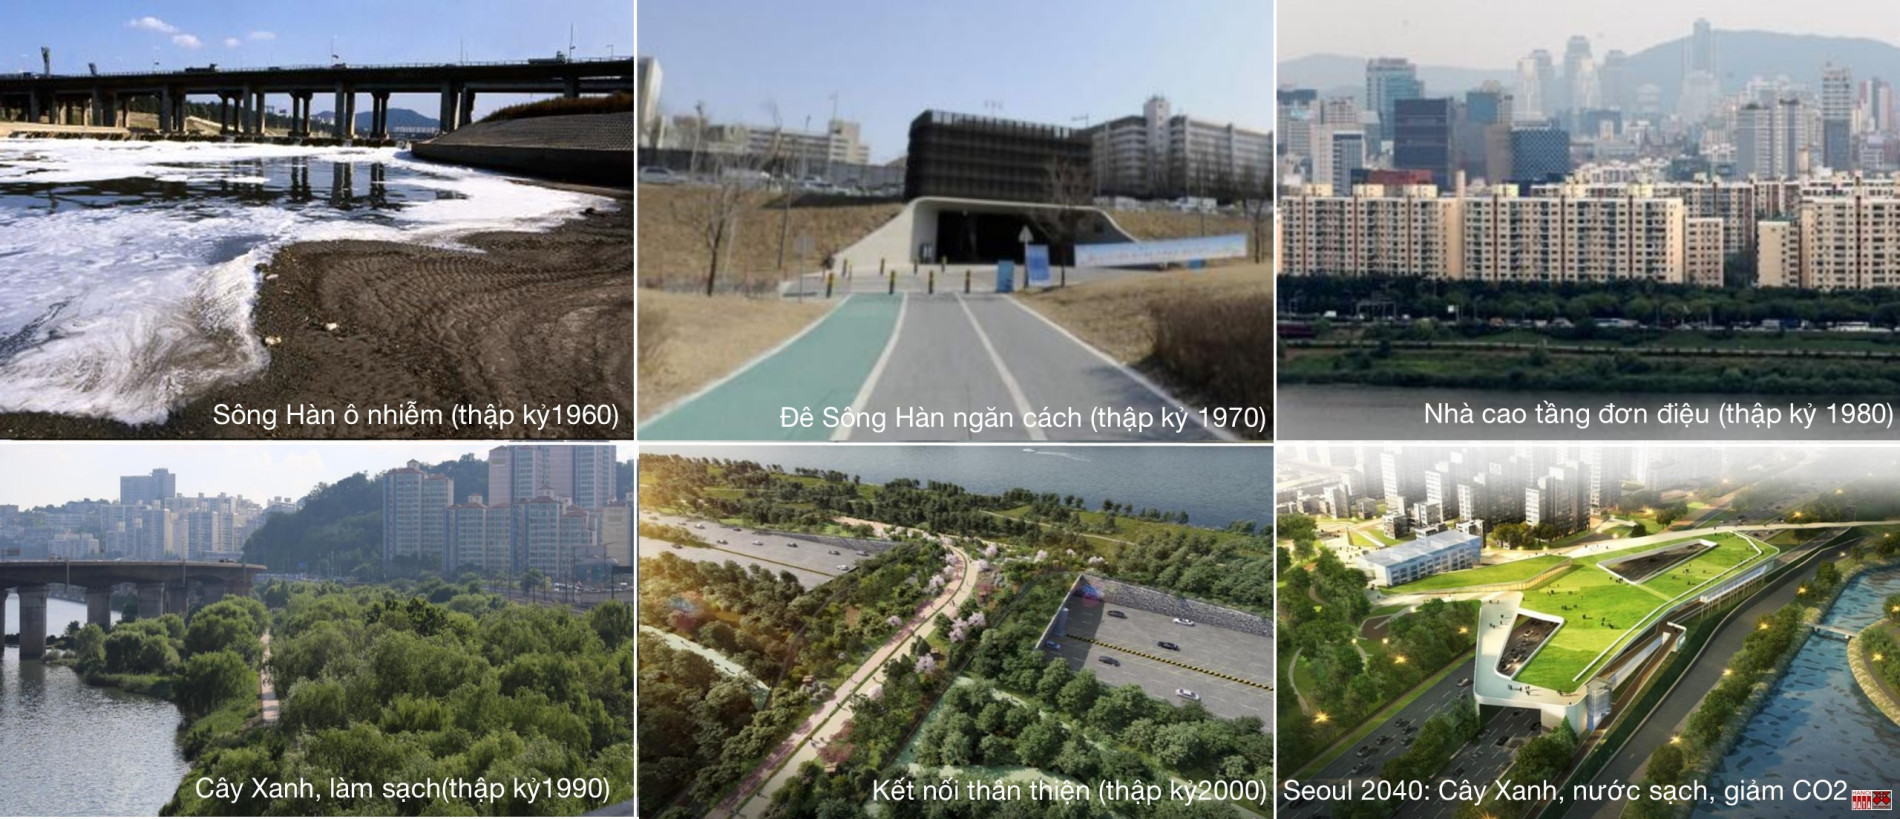 Quy hoạch Tổng thể Seoul 2040: Những ví dụ tốt cho Quy hoạch Thủ đô Hà Nội – Bài 2: Quy hoạch để dòng sông trở nên vĩ đại và thân thiện với con người - Tạp chí Kiến trúc Việt Nam